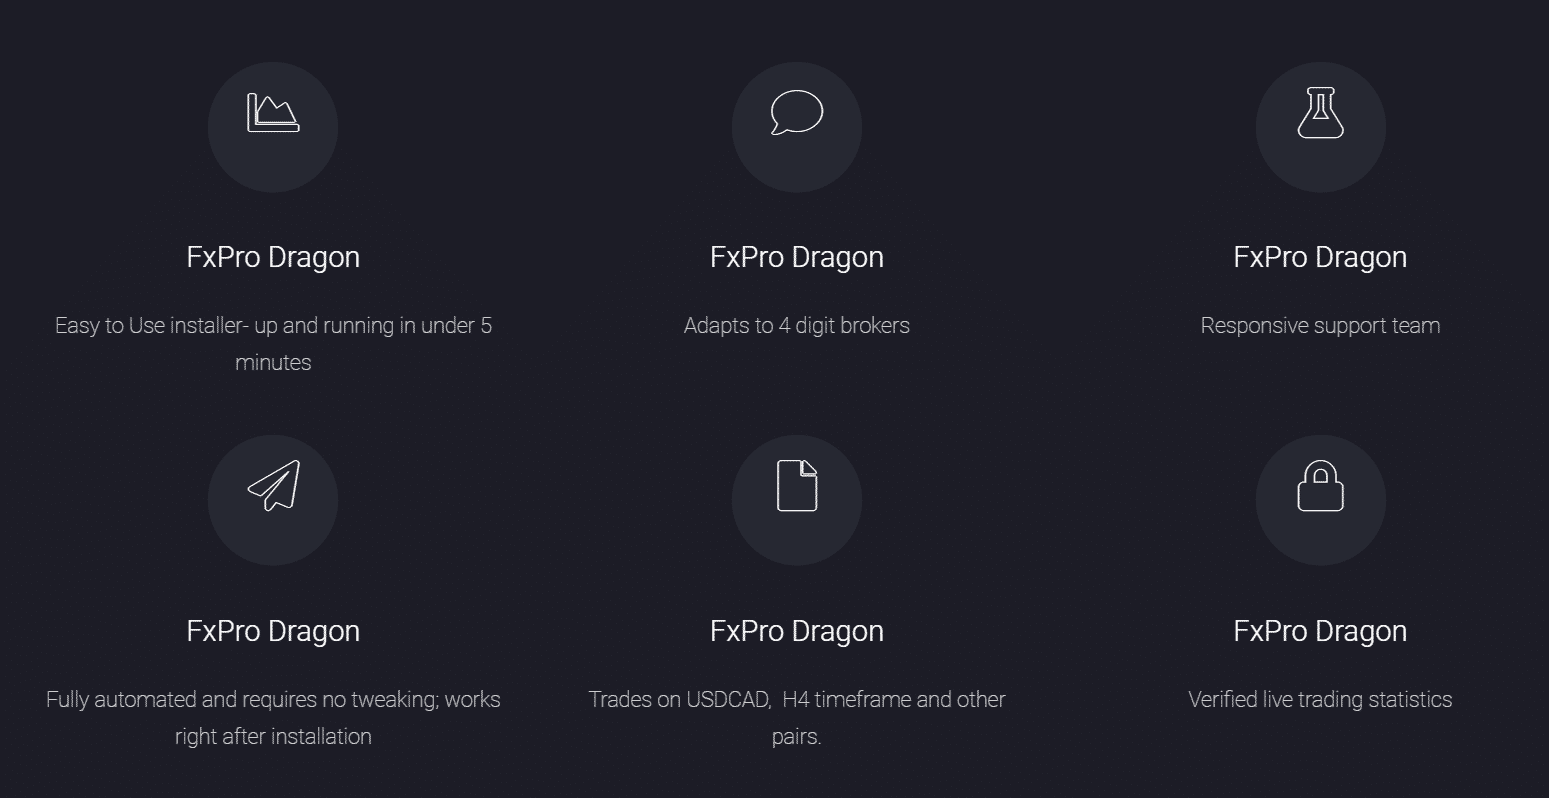 FXPro Dragon details